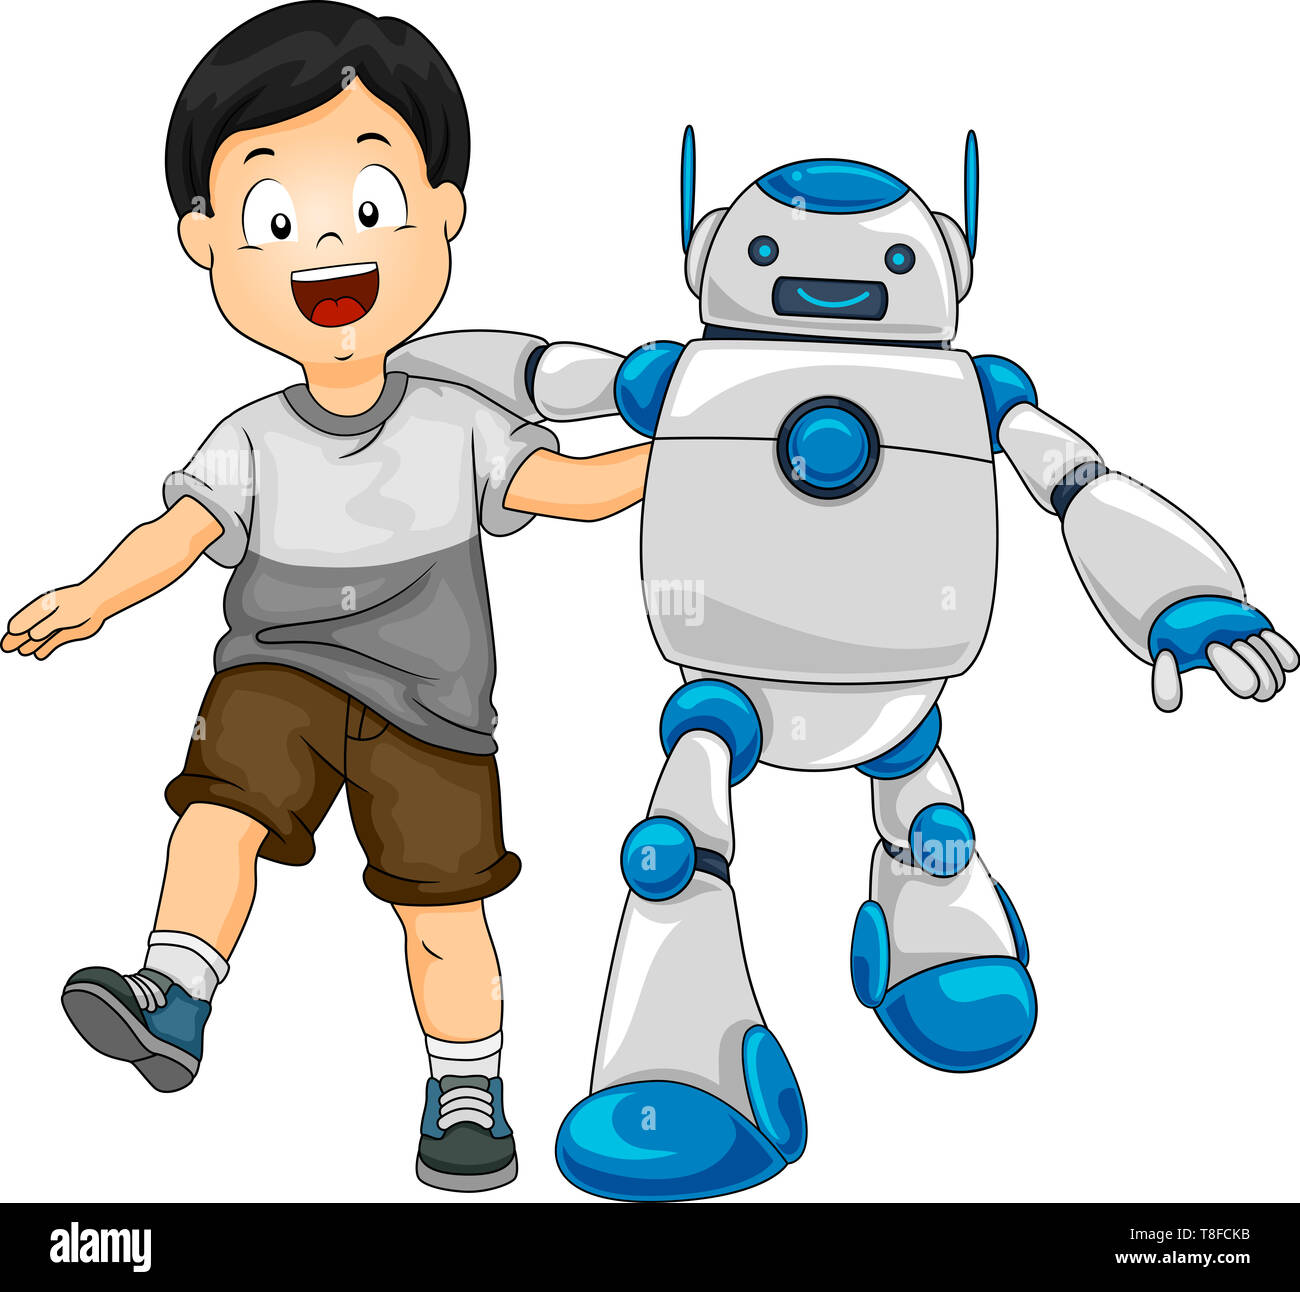 Kid With Robot Sale Online, 56% OFF | www.propellermadrid.com